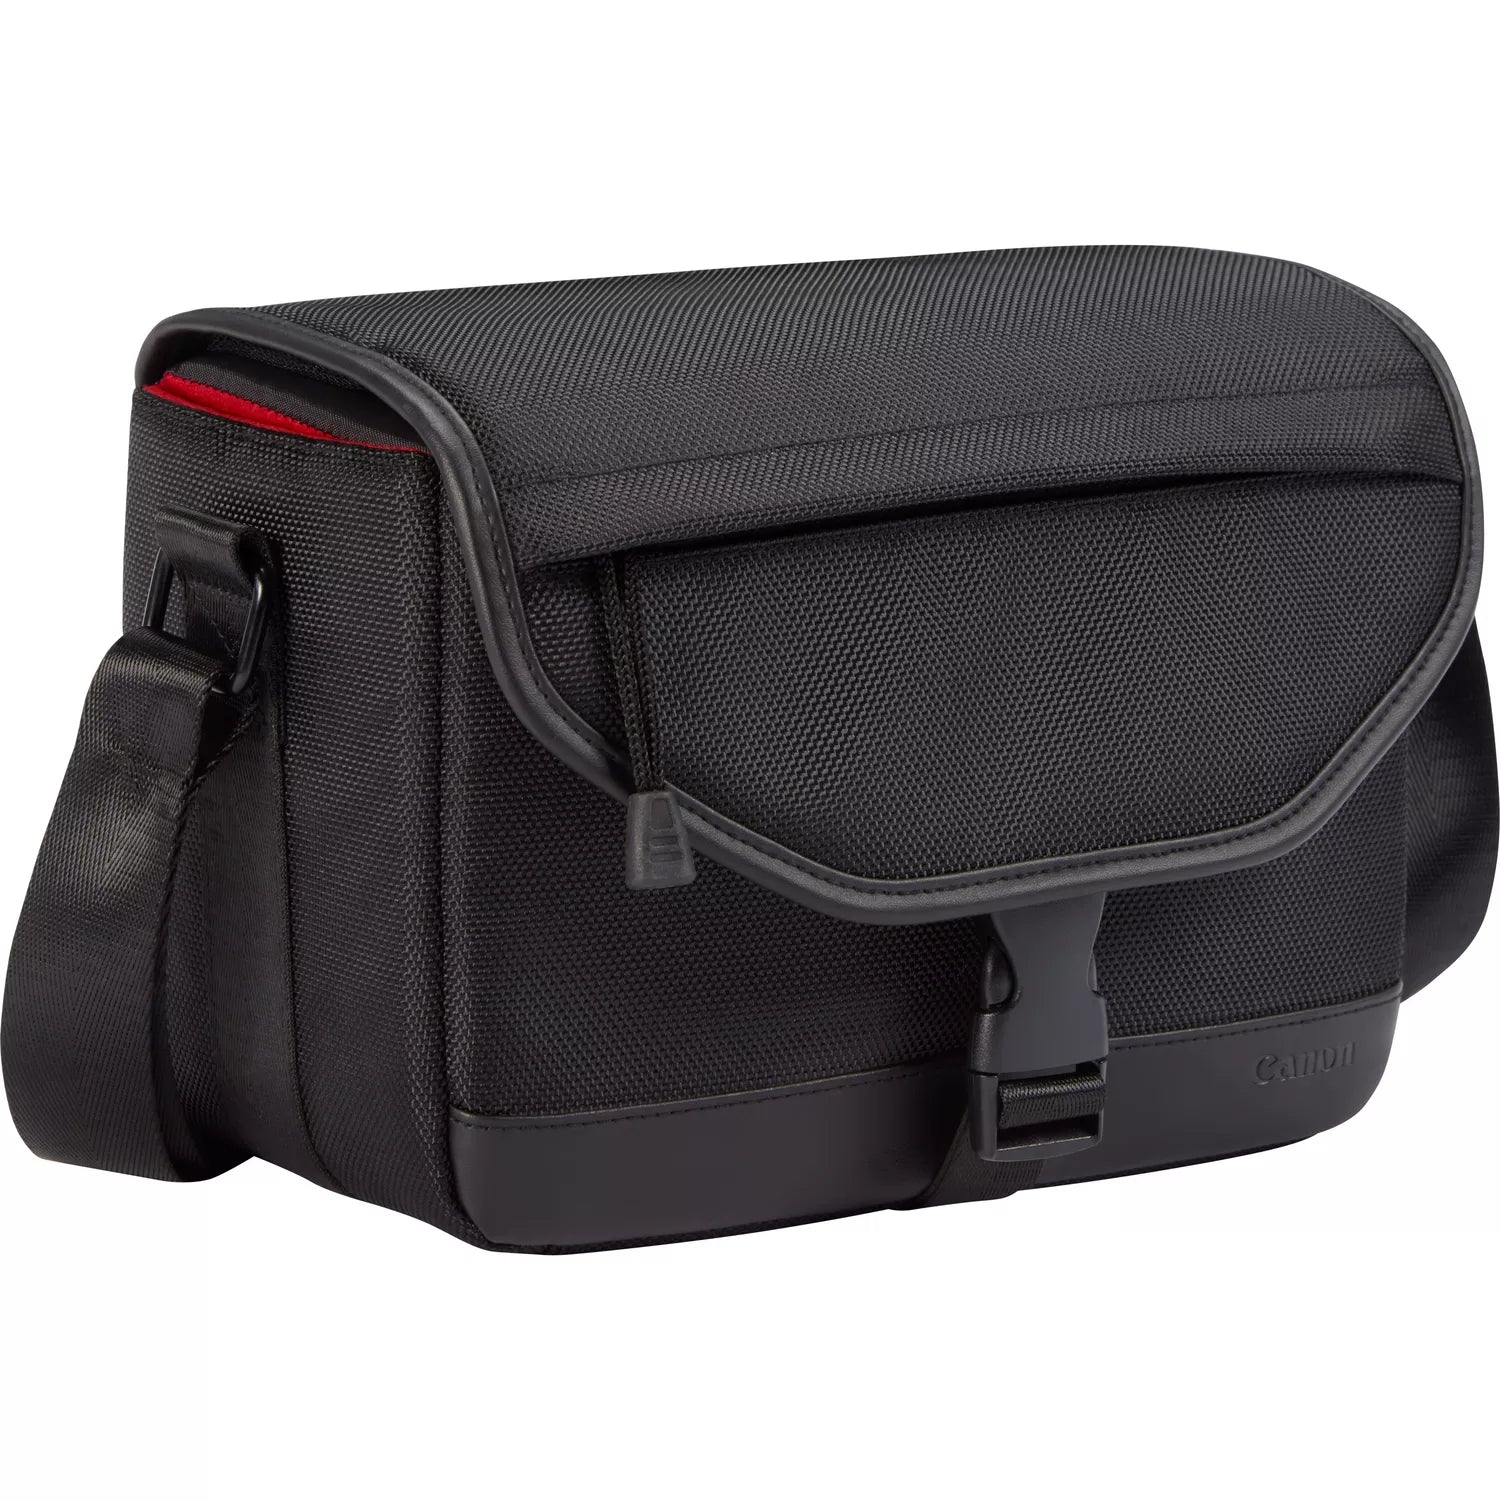 Canon Shoulder bag For DSLR & Mirrorless Cameras - Black